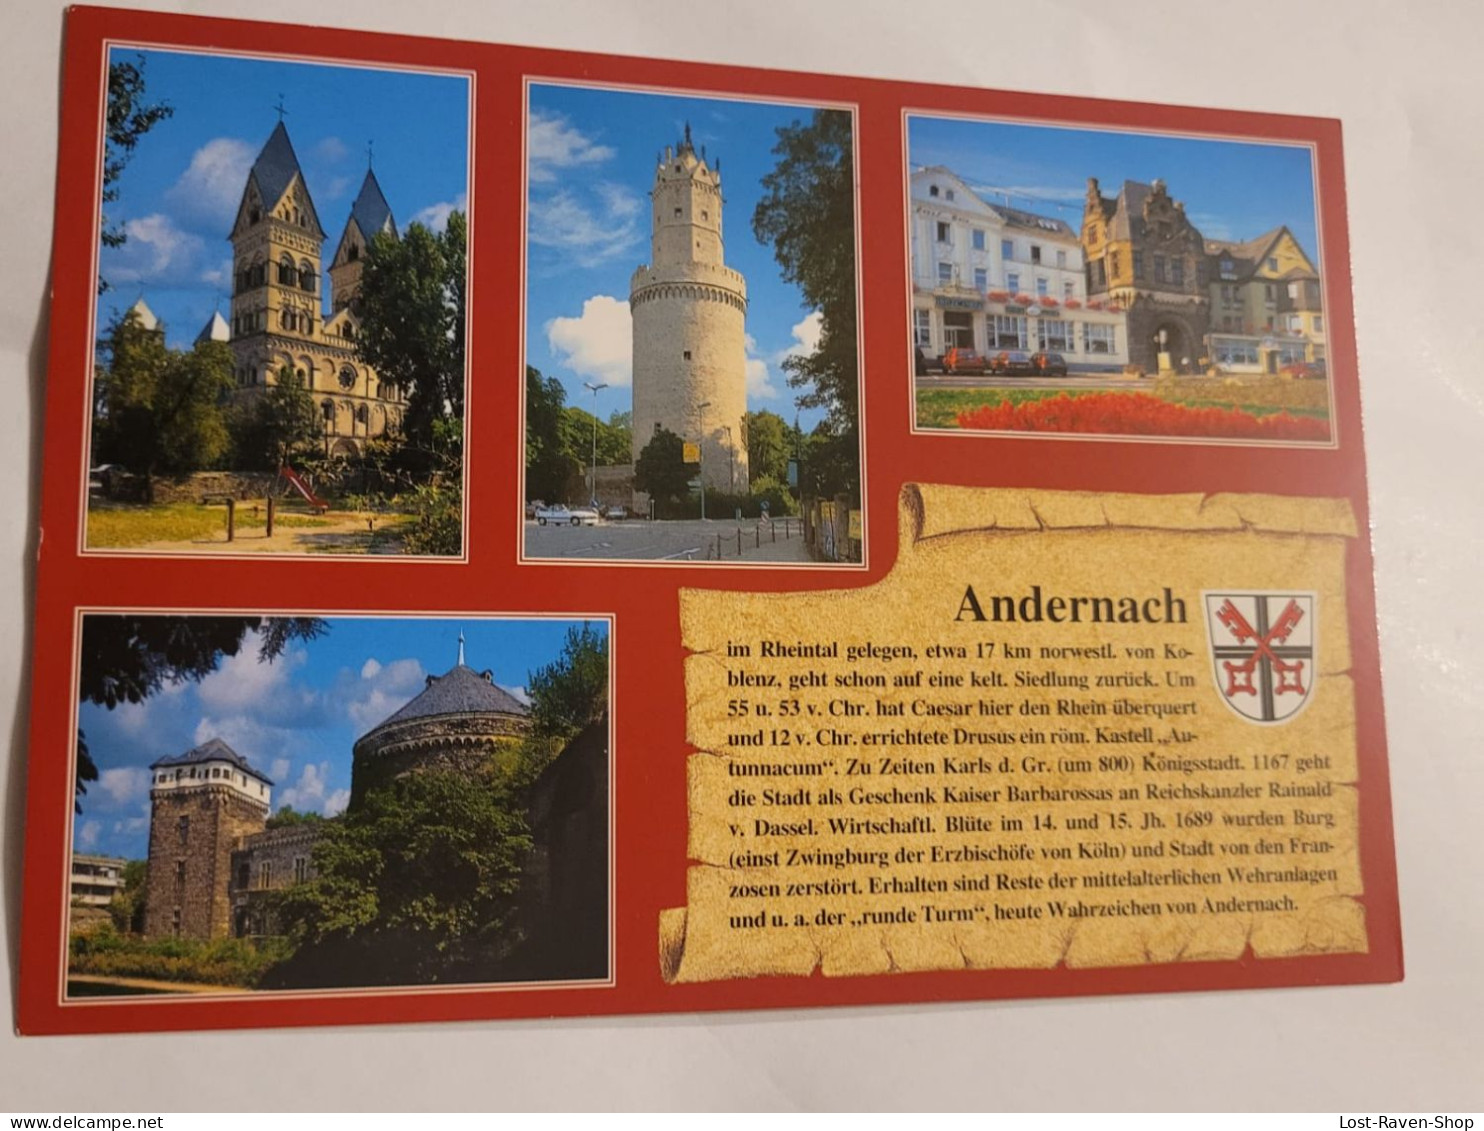 Andernach - Andernach